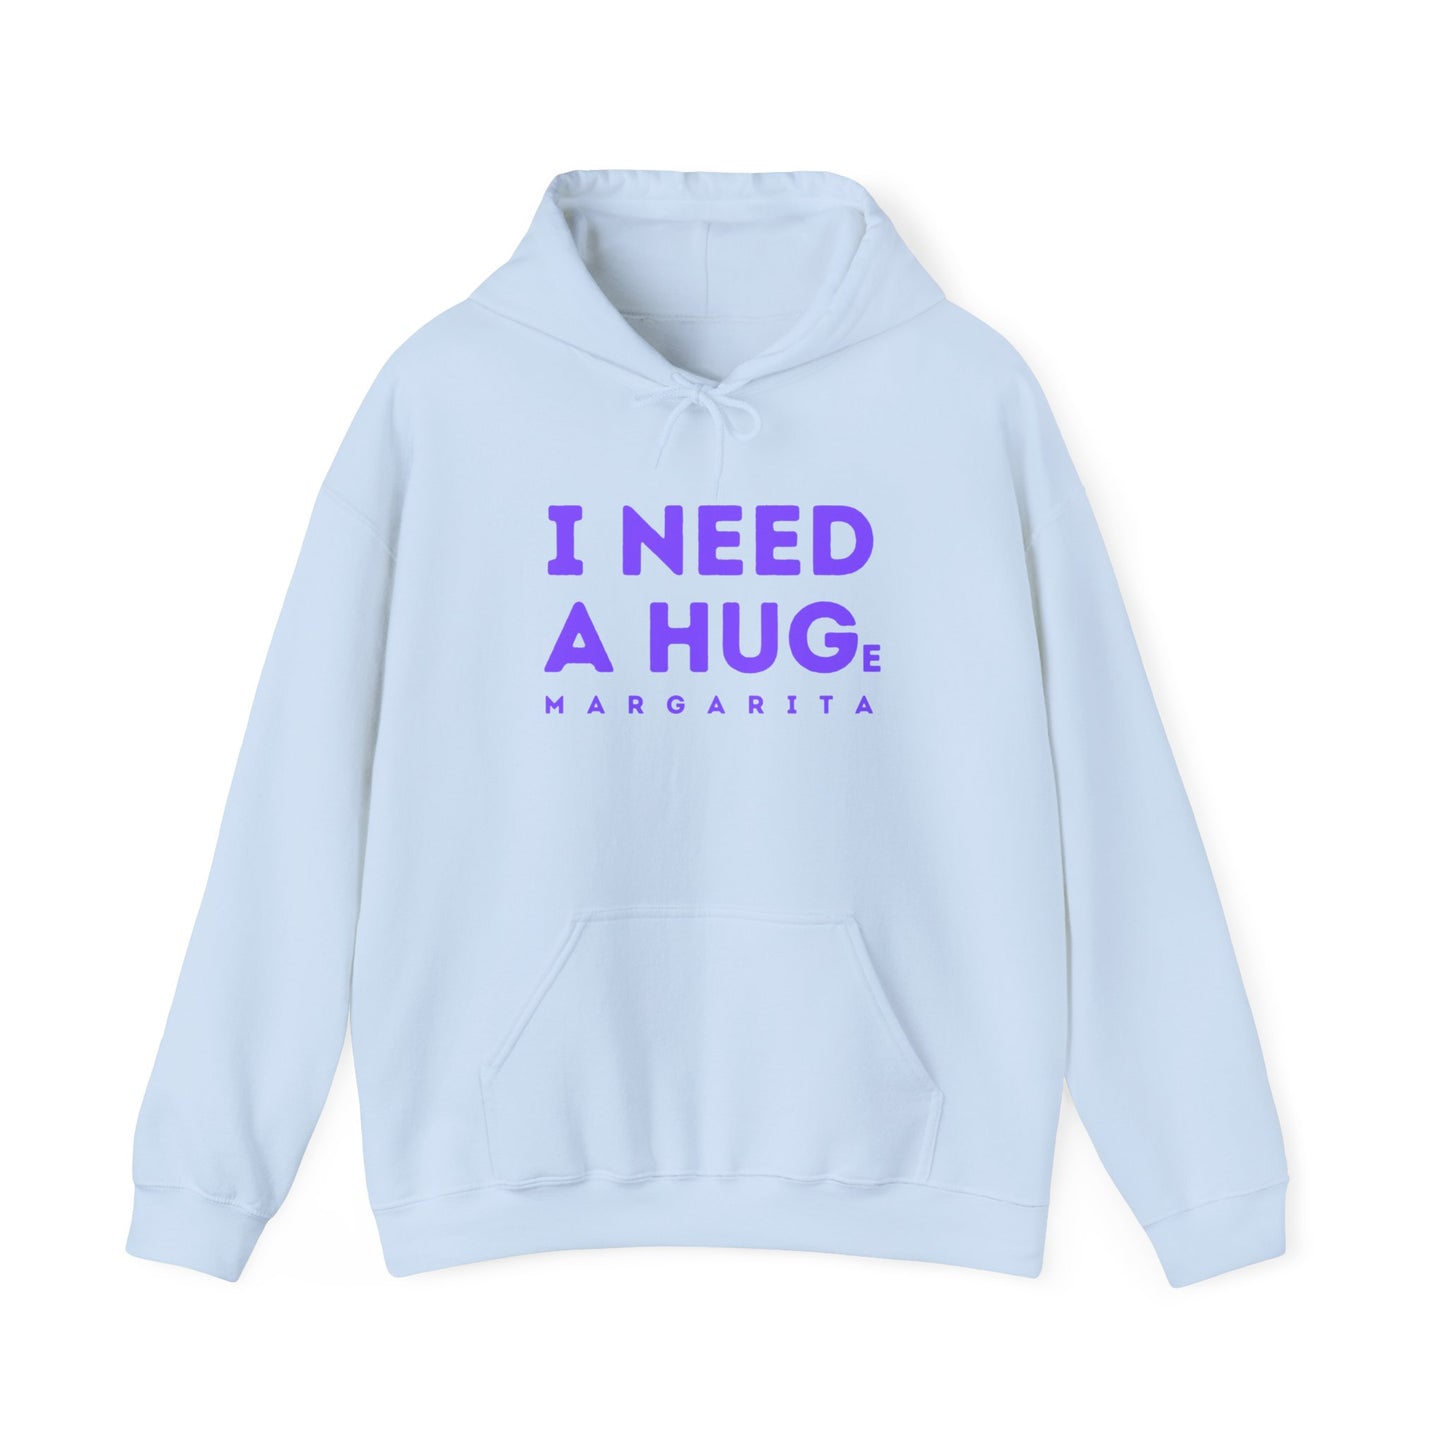 "I need a hug" - Hoodie